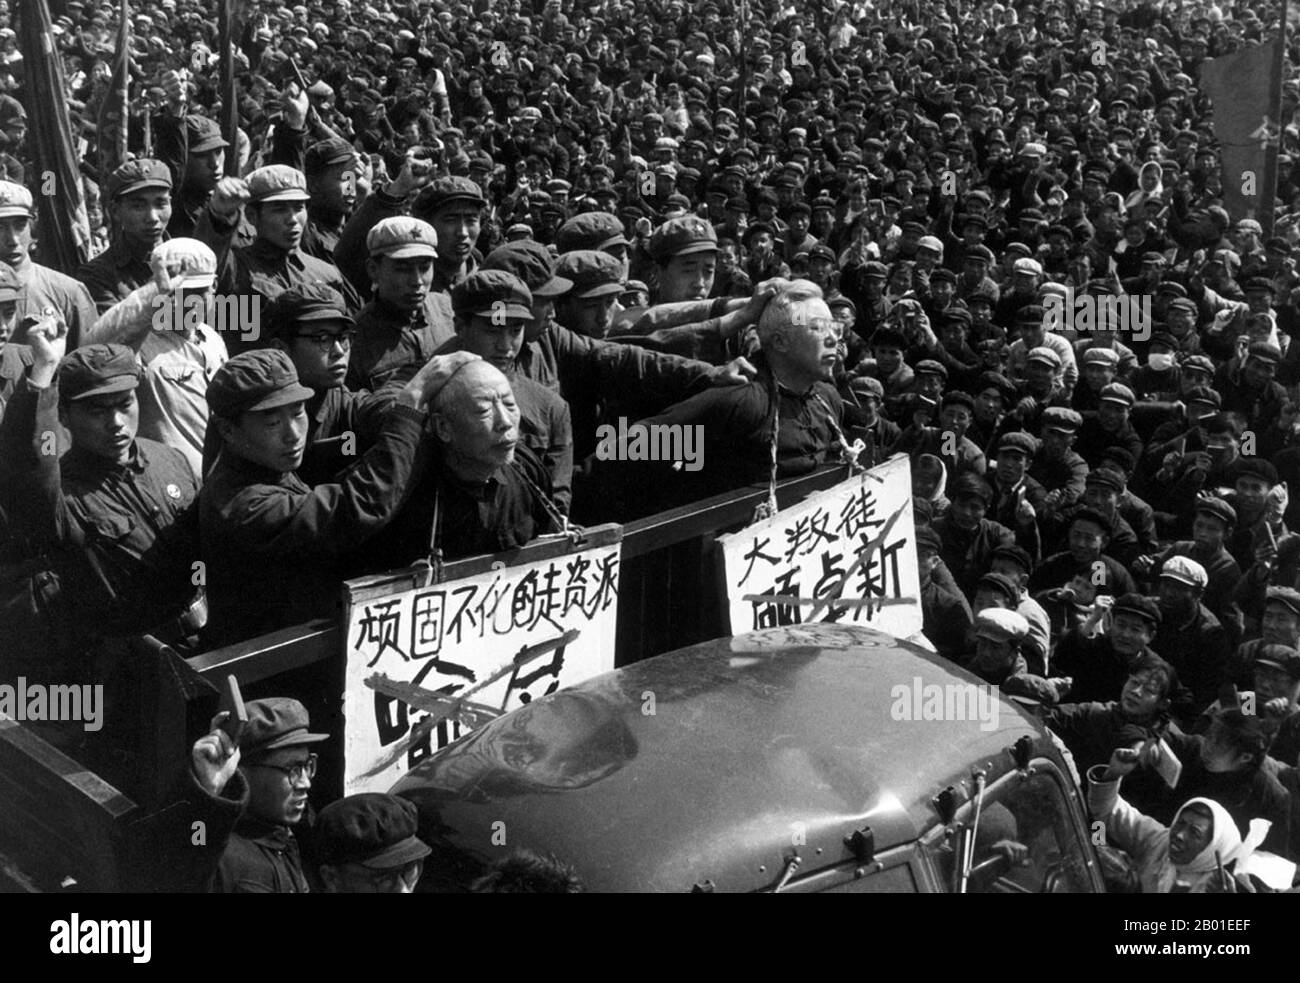 Cina: Denunciare 'i Roaders capitalisti', scena della Rivoluzione Culturale (1966-1976), agosto 1968. La Grande Rivoluzione Culturale proletaria, comunemente nota come Rivoluzione Culturale (in cinese: 文化大革命), fu un movimento socio-politico che ebbe luogo nella Repubblica popolare Cinese dal 1966 al 1976. Messo in moto da Mao Zedong, allora presidente del Partito comunista cinese, il suo obiettivo dichiarato era di far rispettare il socialismo nel paese rimuovendo gli elementi capitalisti, tradizionali e culturali dalla società cinese, e imponendo l'ortodossia maoista all'interno del Partito. Foto Stock